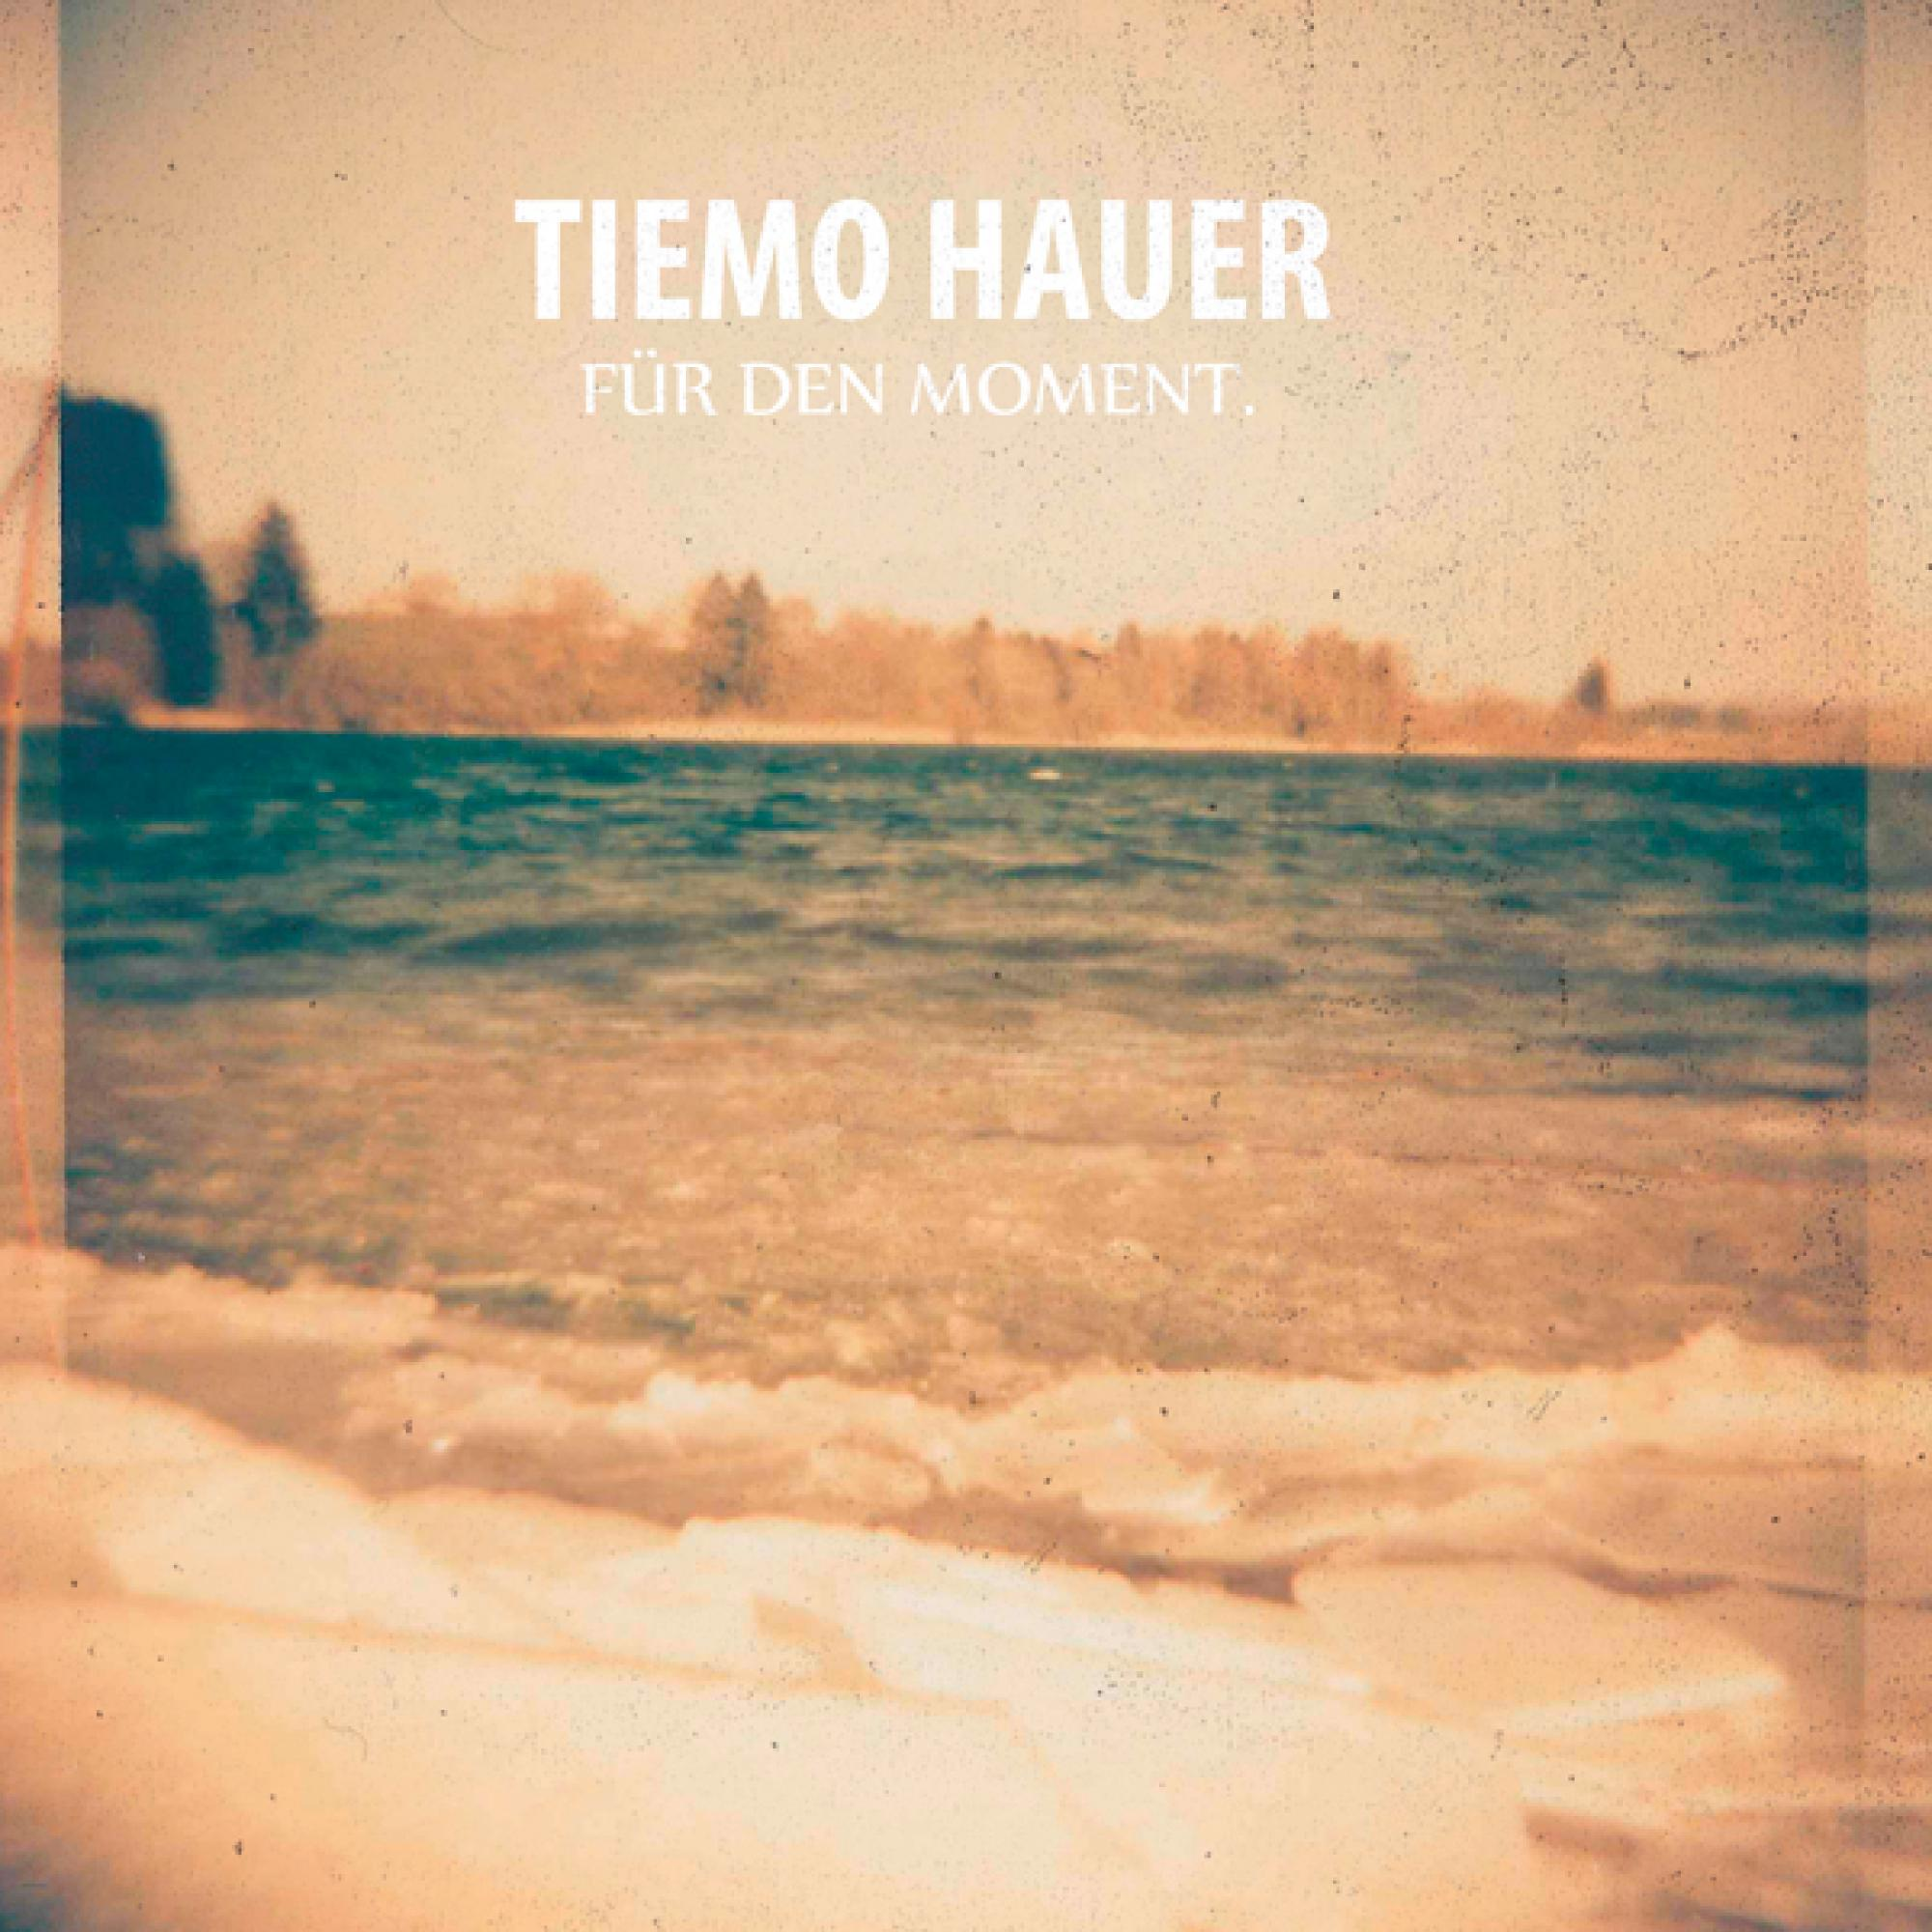 Tiemo Hauer - Für Moment. - Den (CD)